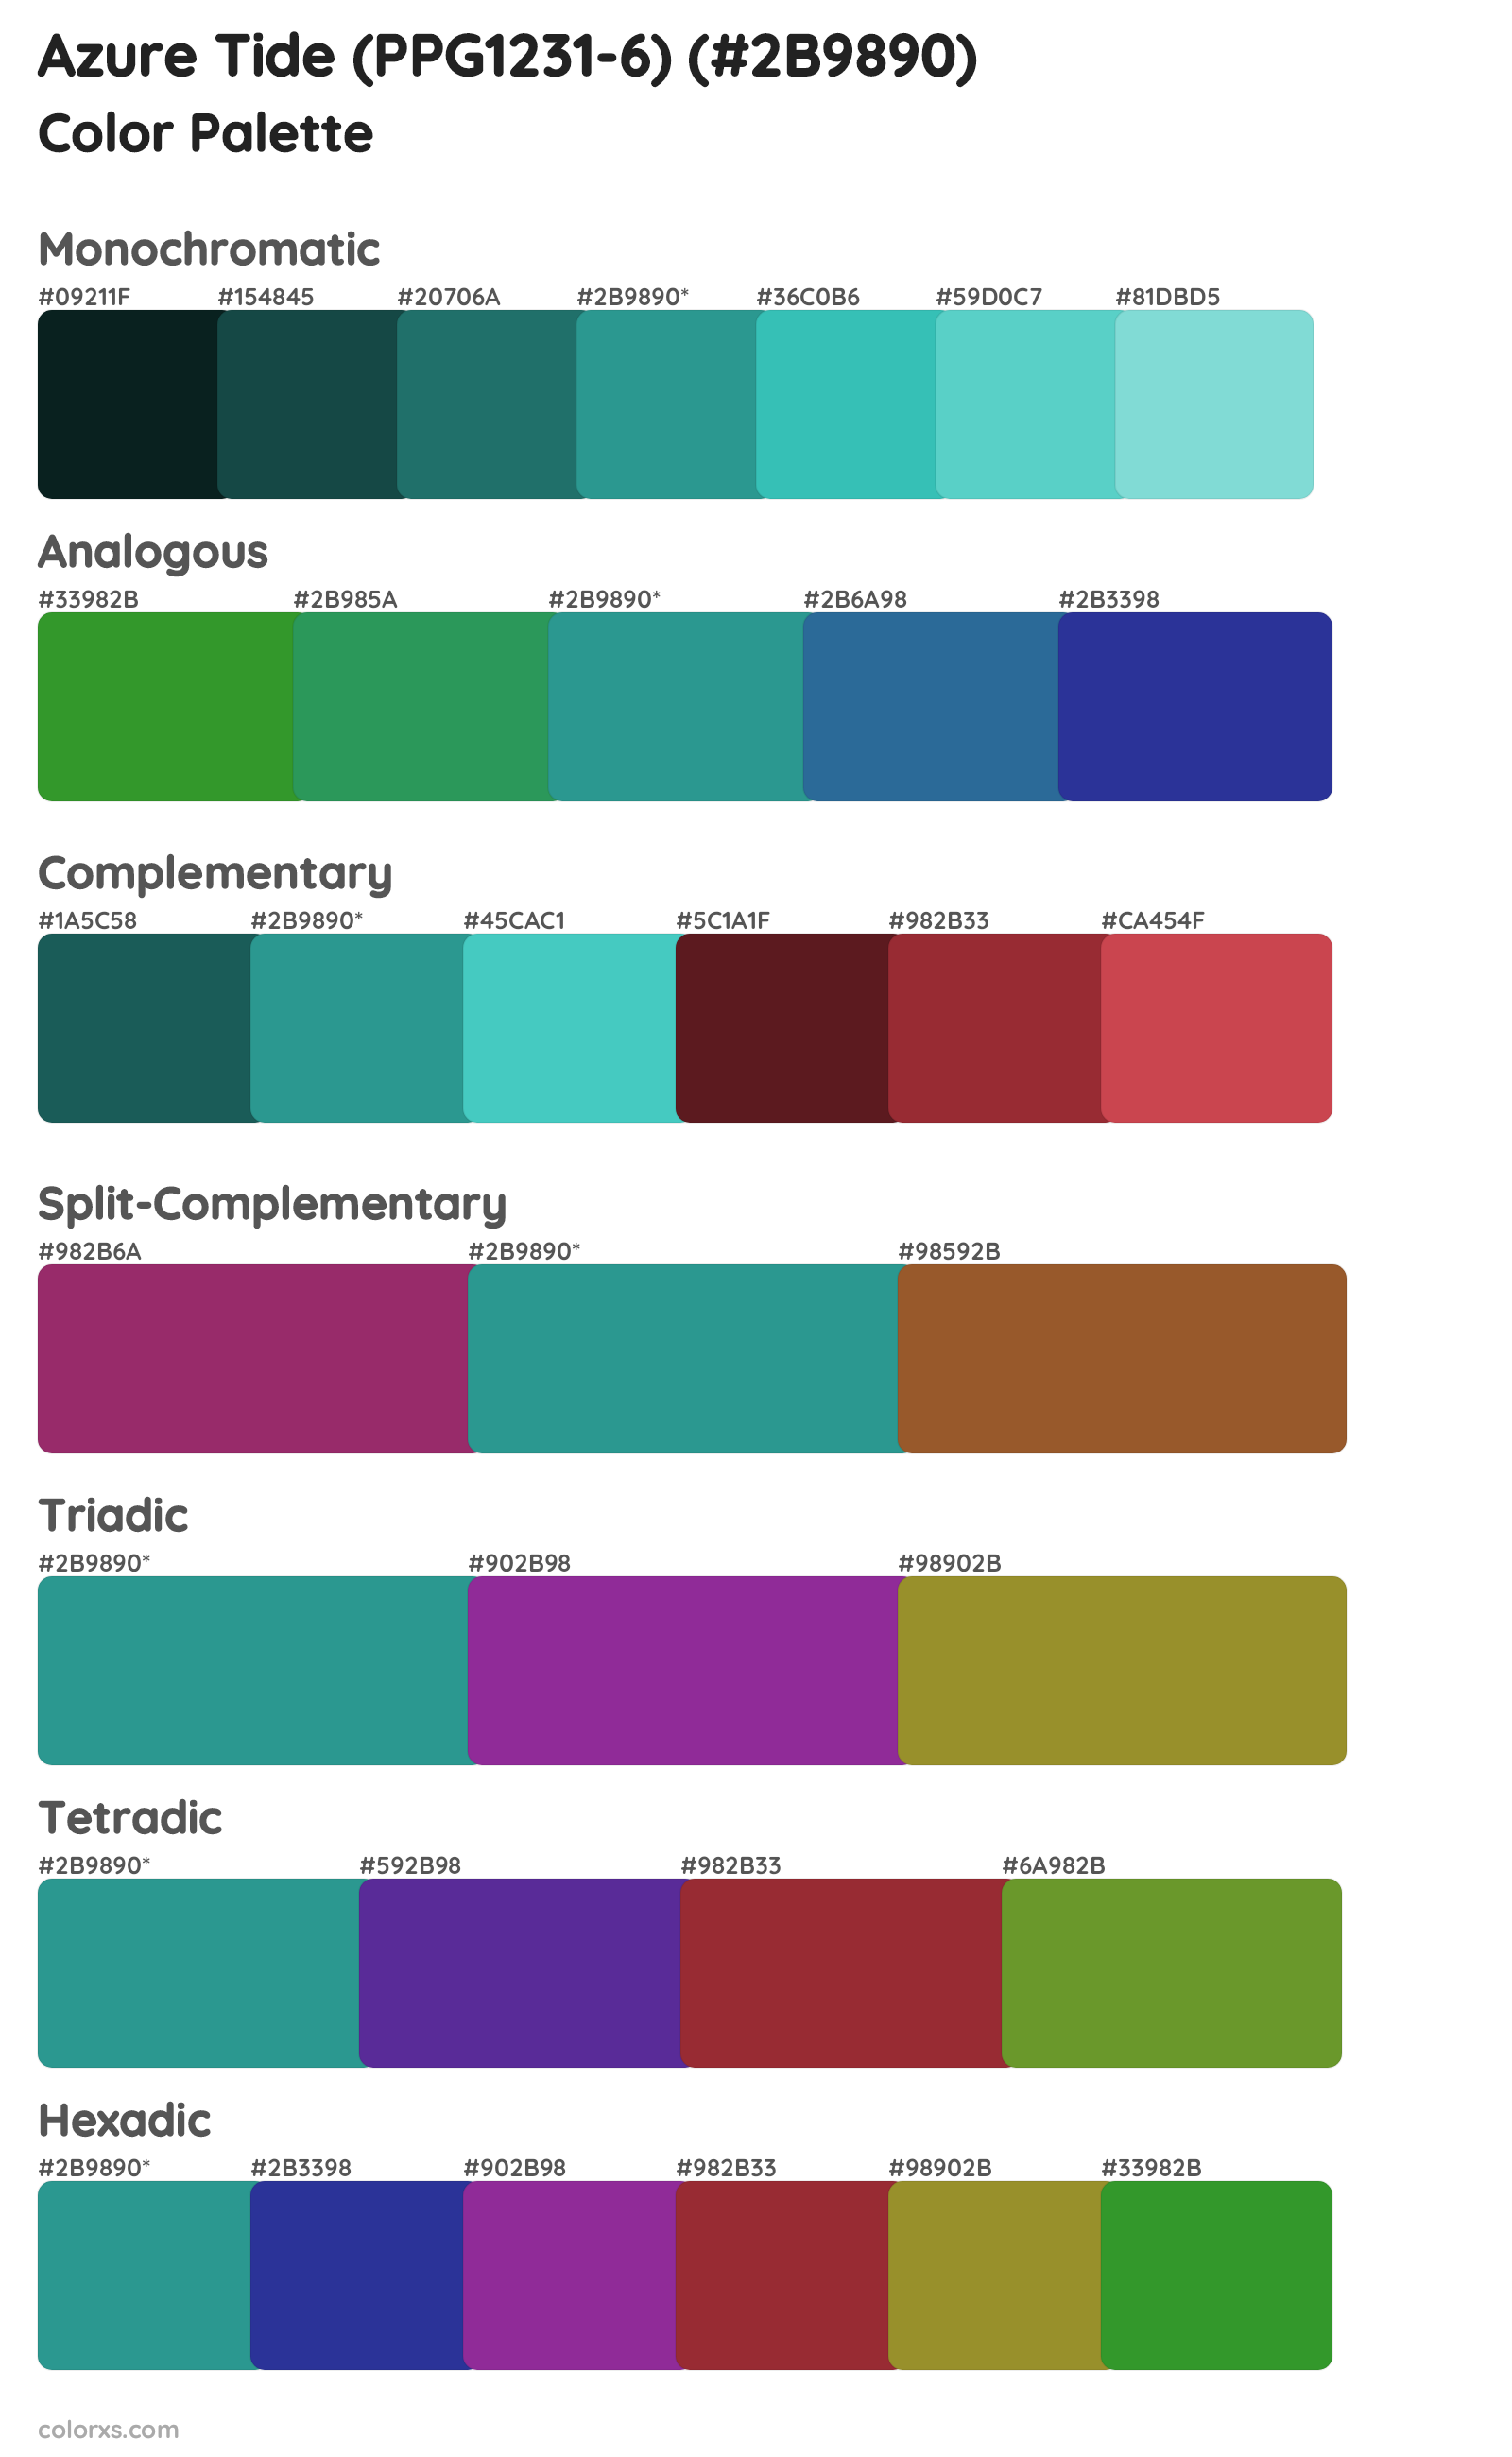 Azure Tide (PPG1231-6) Color Scheme Palettes